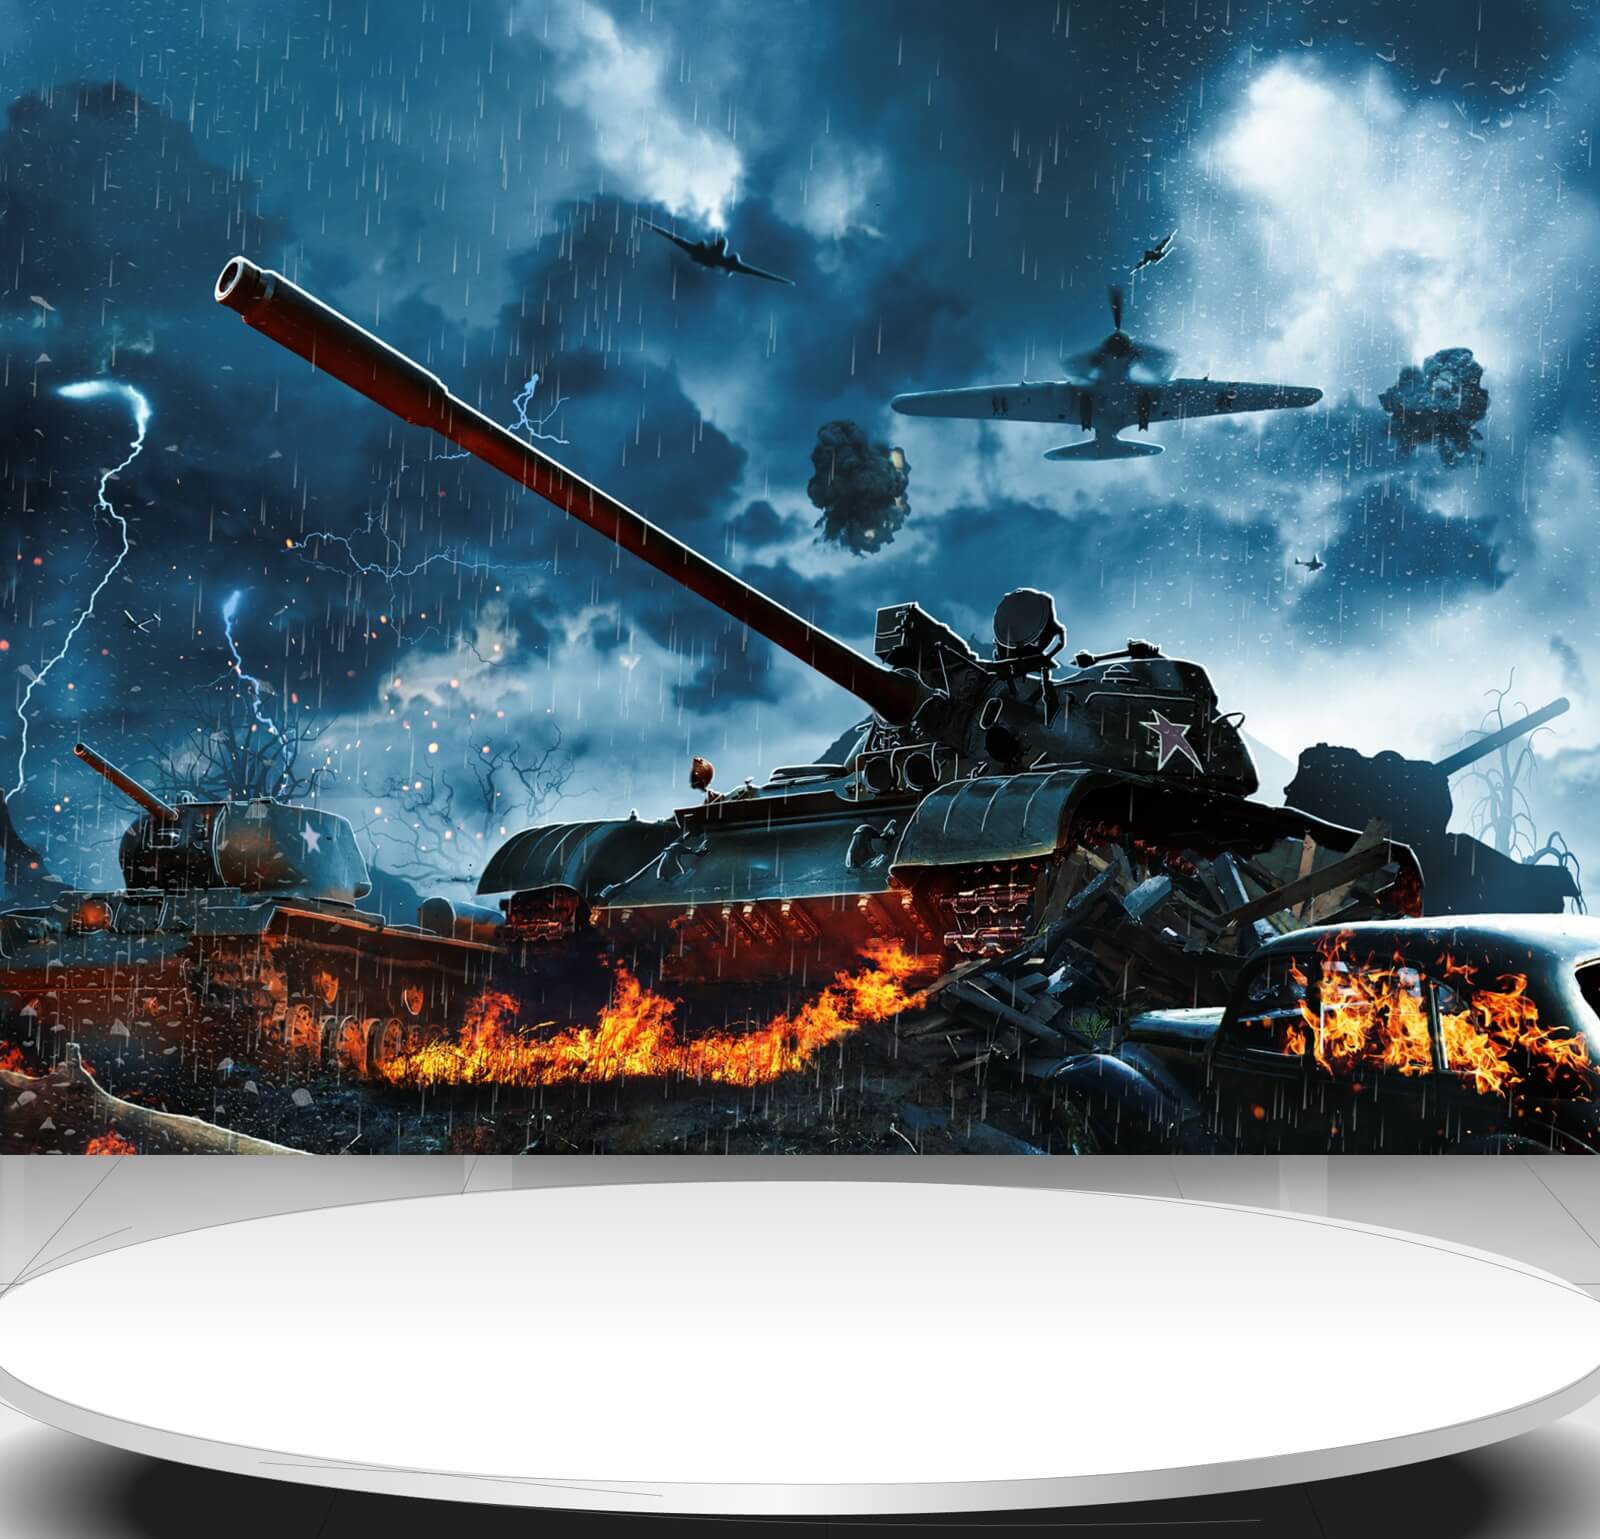 Vlies Tapete Poster Fototapete Panzer Krieg